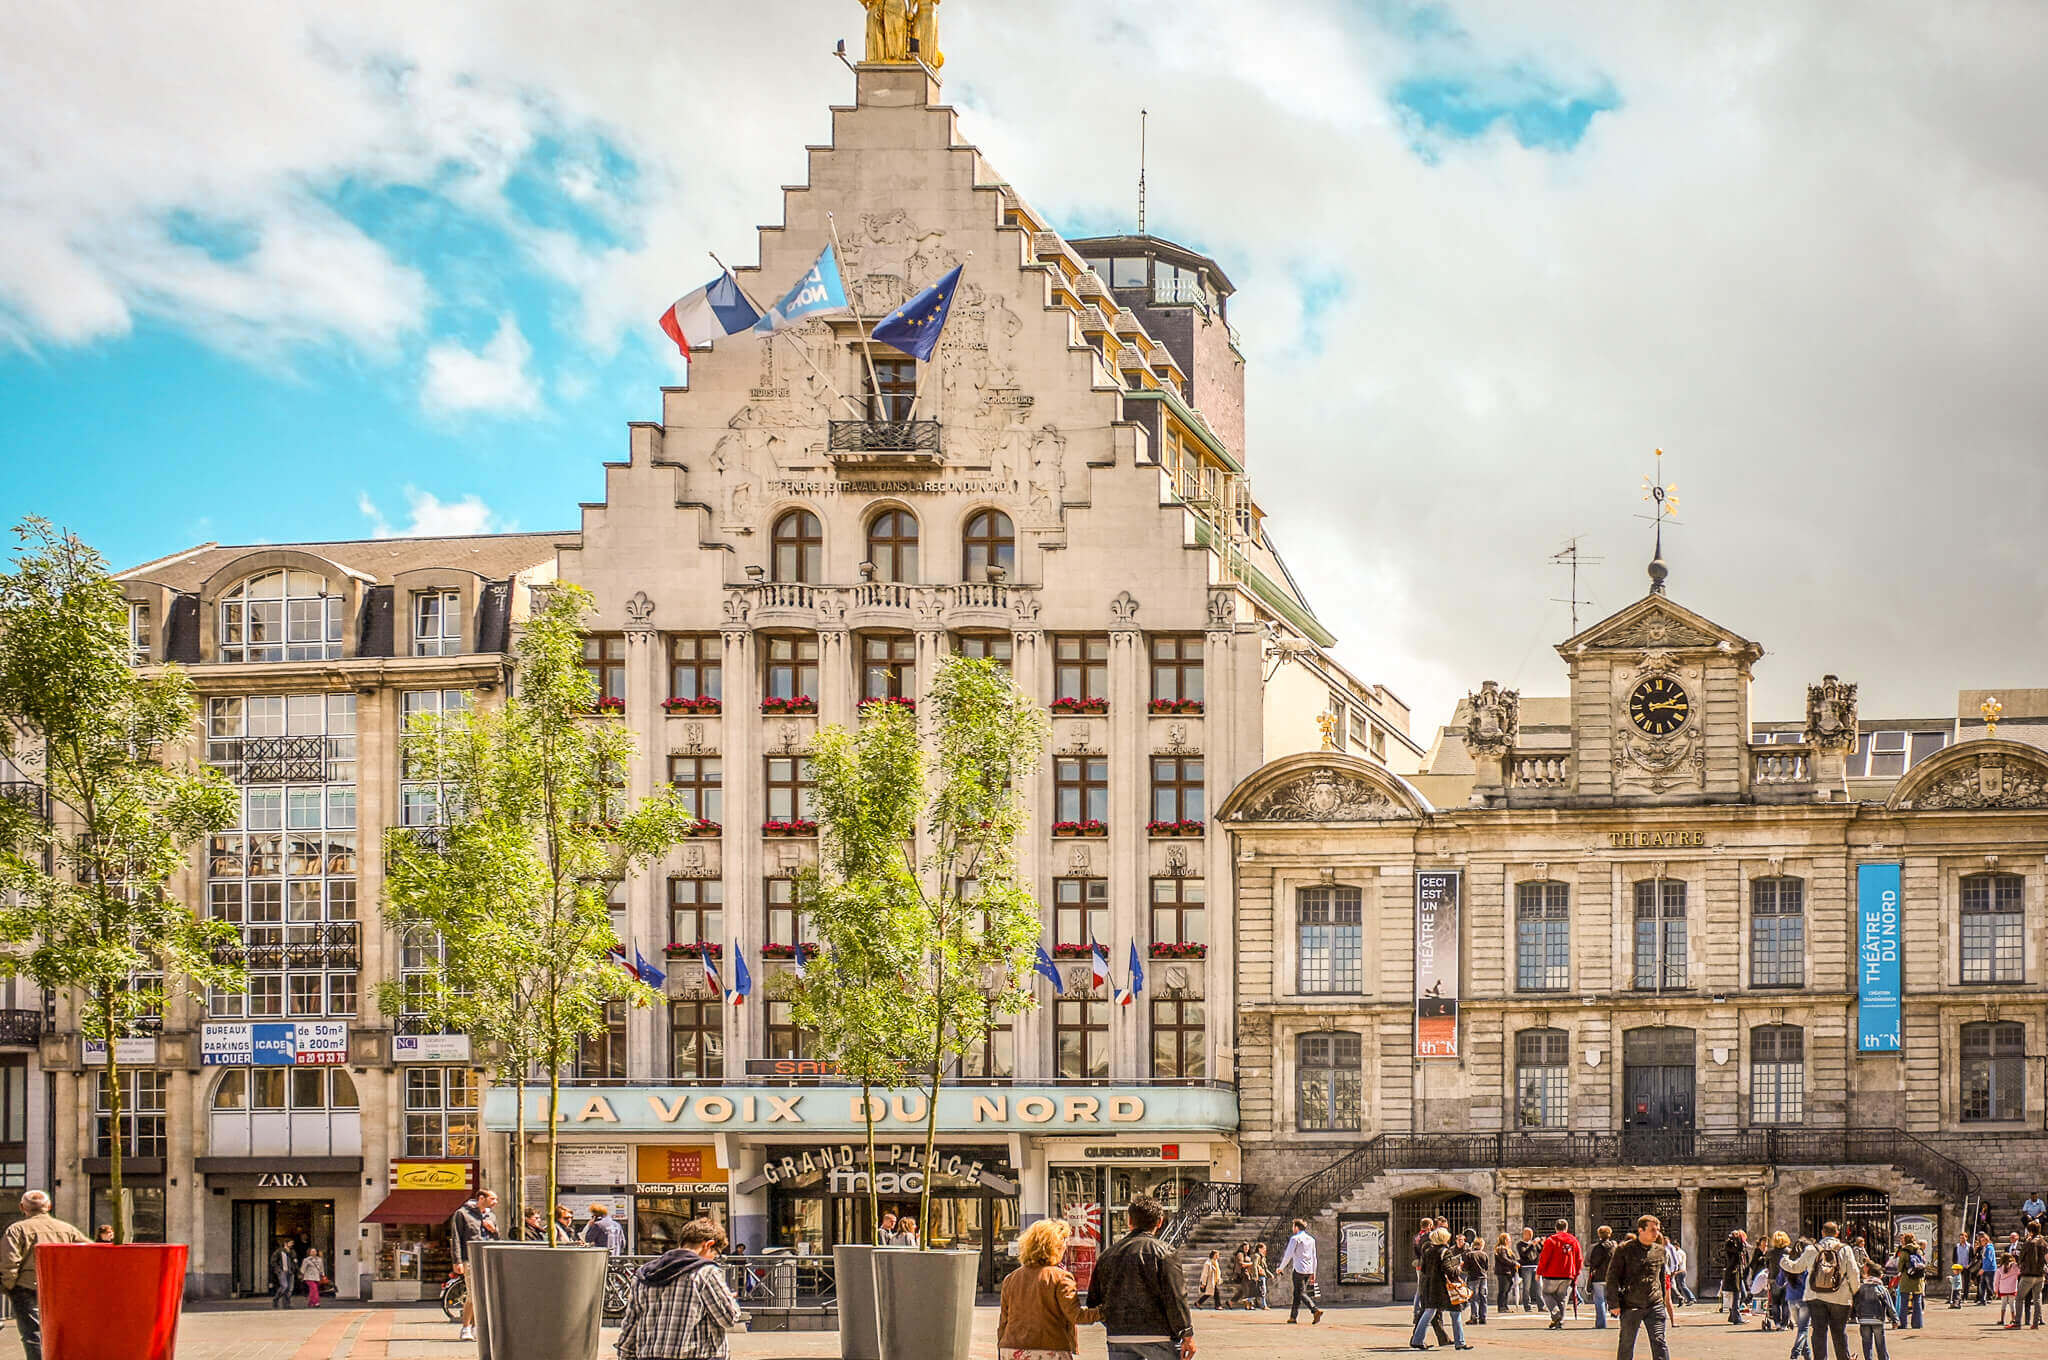 The Place du Général-de-Gaulle square in Lille, France